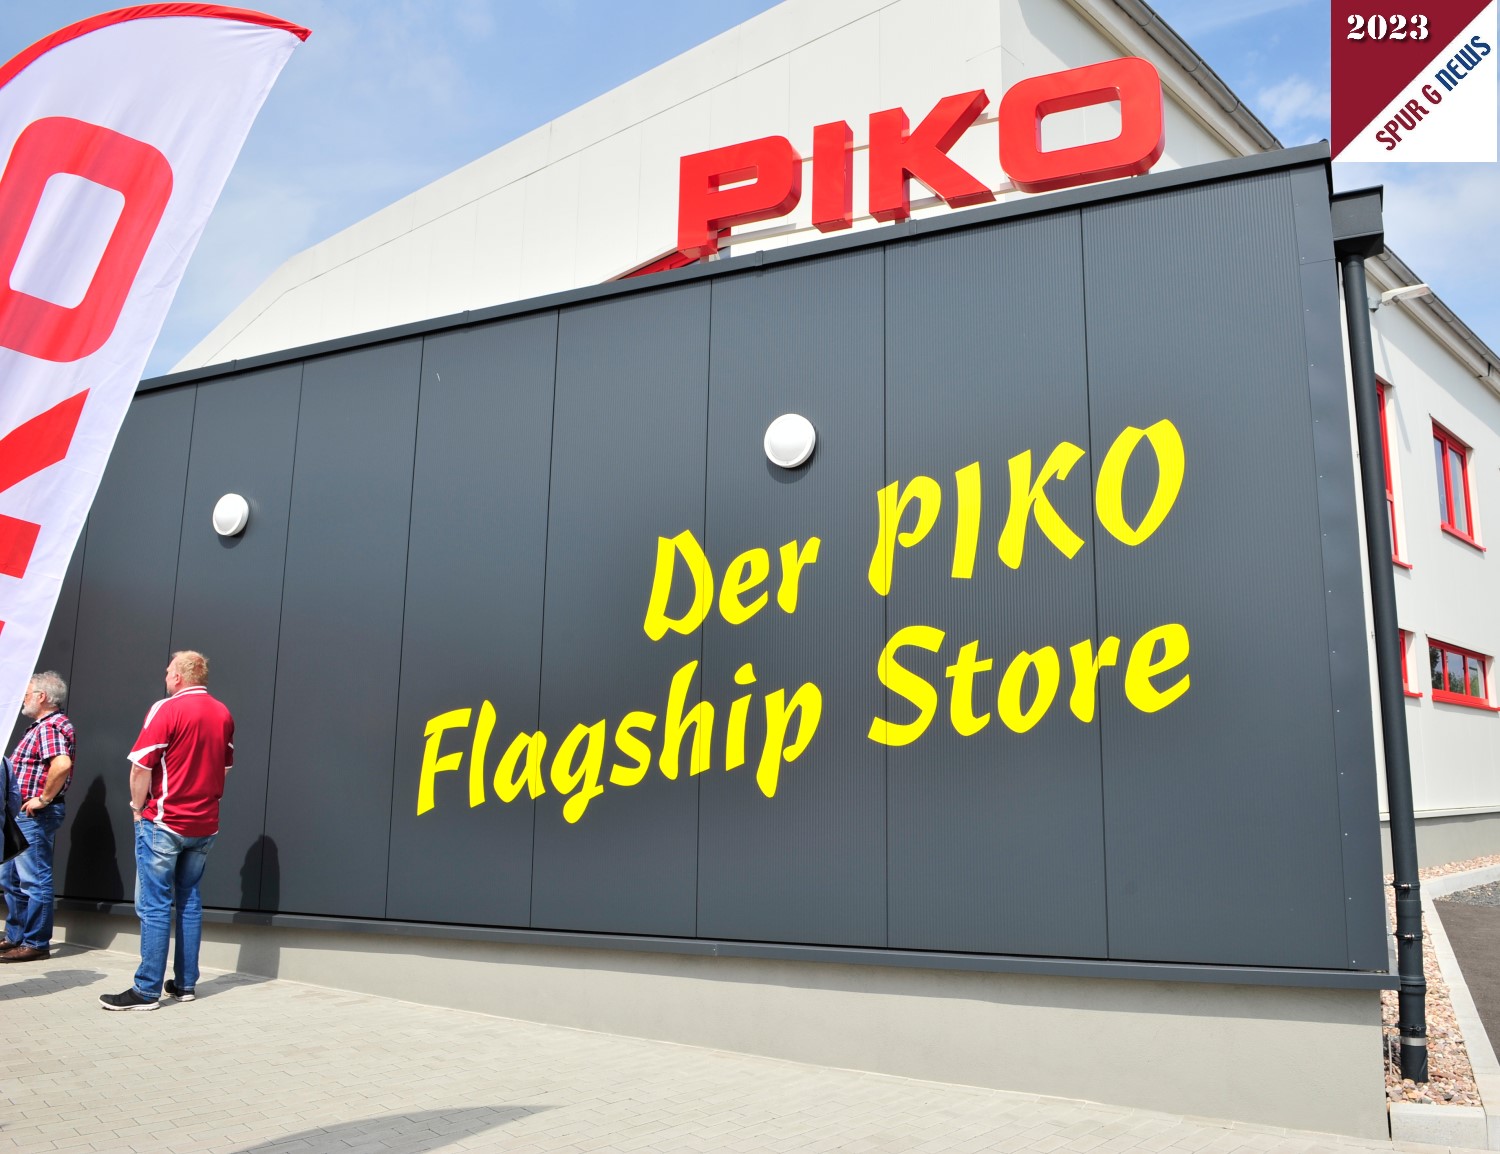 Der neue Flagship Store von PIKO.  Flagship Store ist eine exklusive und besondere Filiale einer Marke die meist in Großstädten betrieben wird und sich durch ein reichhaltiges und besonderes Angebot der Marke auszeichnet. Sonneberg ist somit auch eine "Großstadt" geworden, wenn es um die "PIKO" geht. 